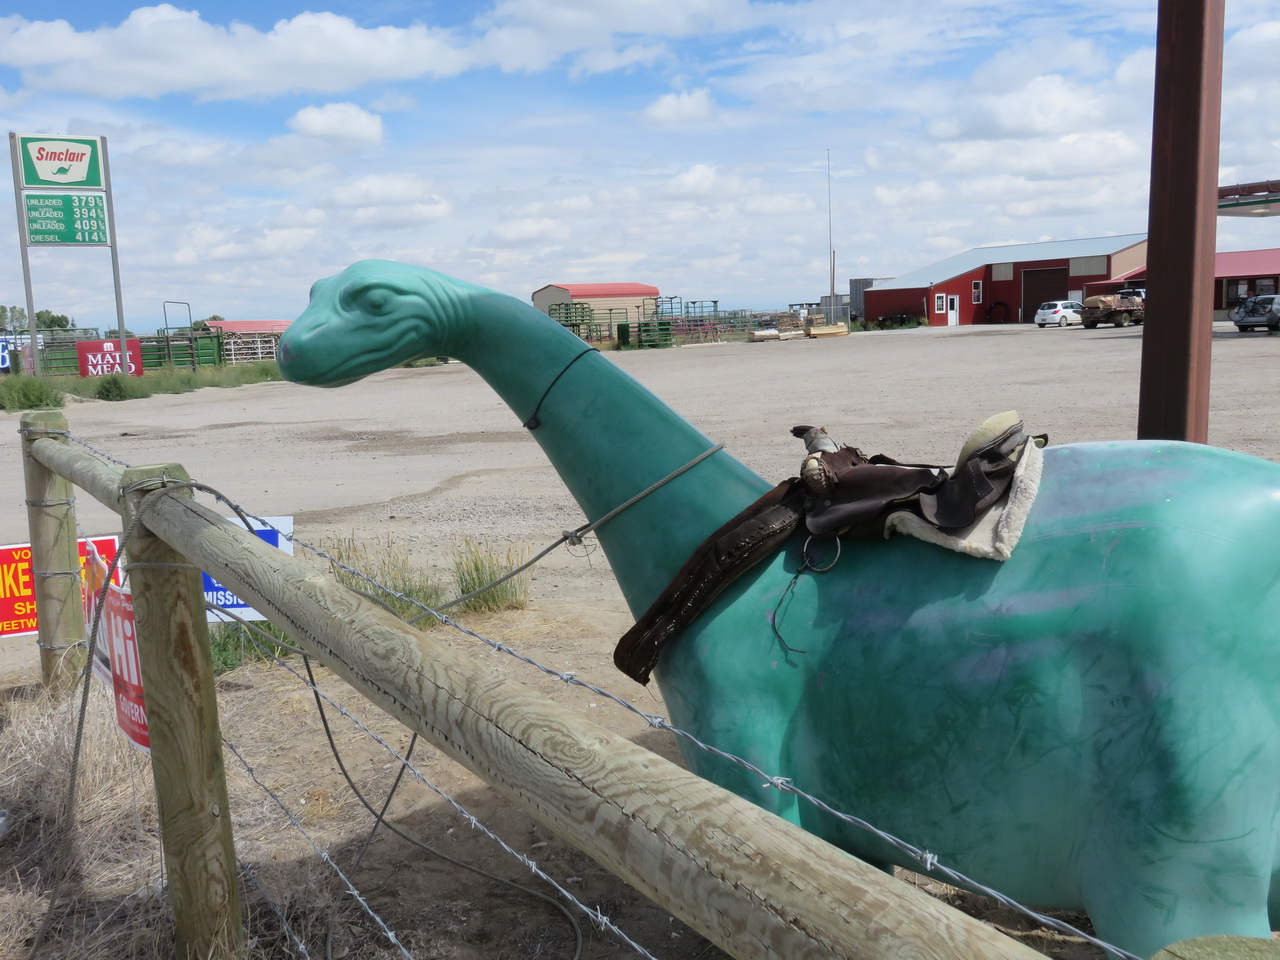 Sinclair Dinosaur Wyoming